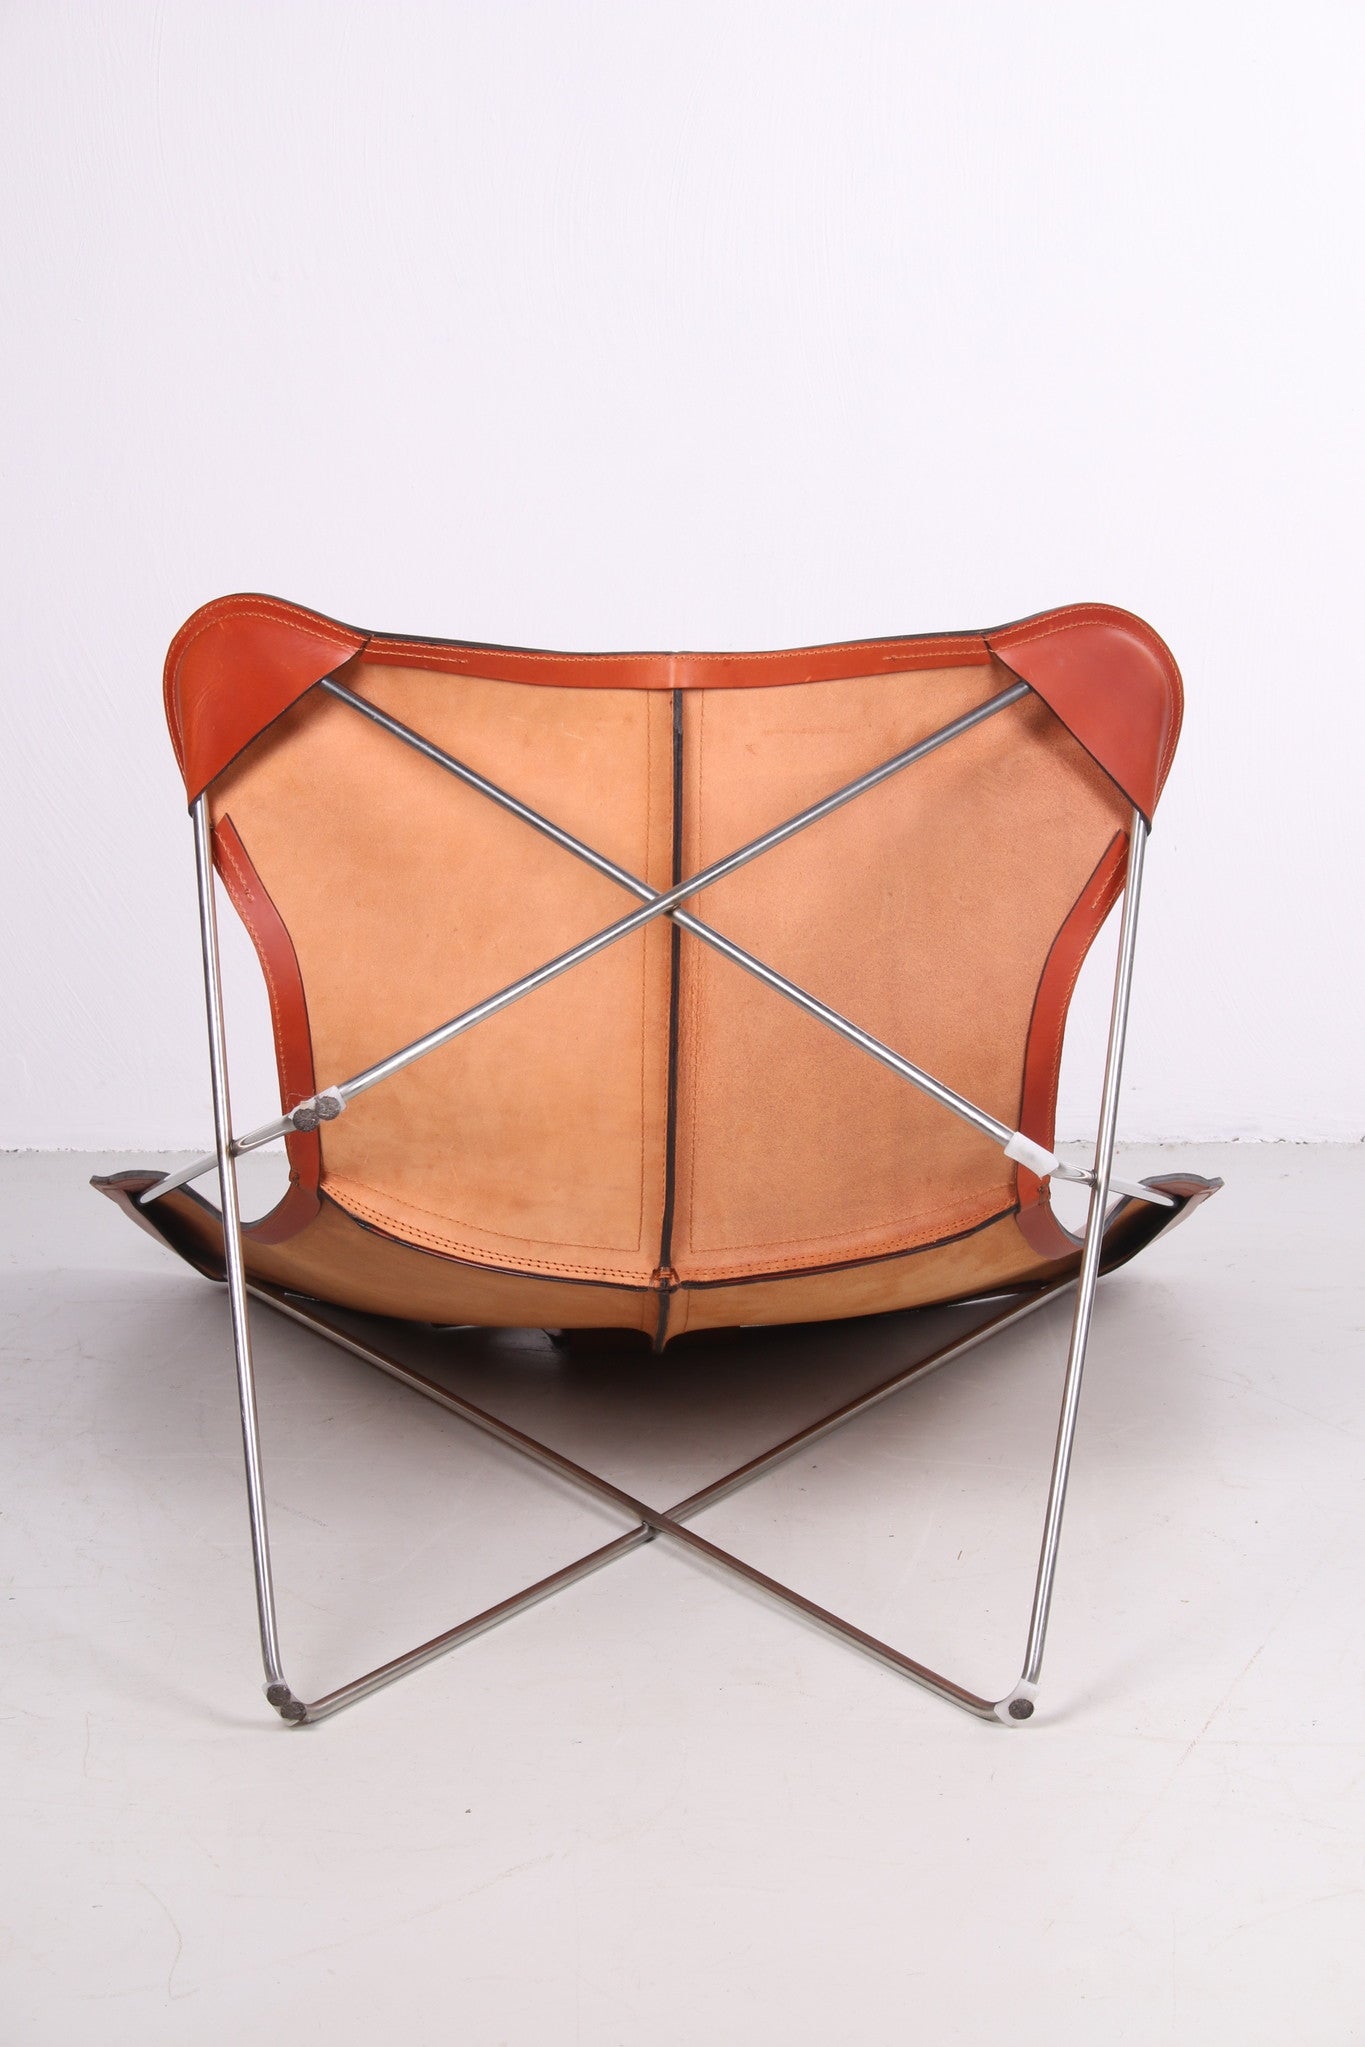 Vlinderstoel Ks chair van Ox Denmarq onderkant